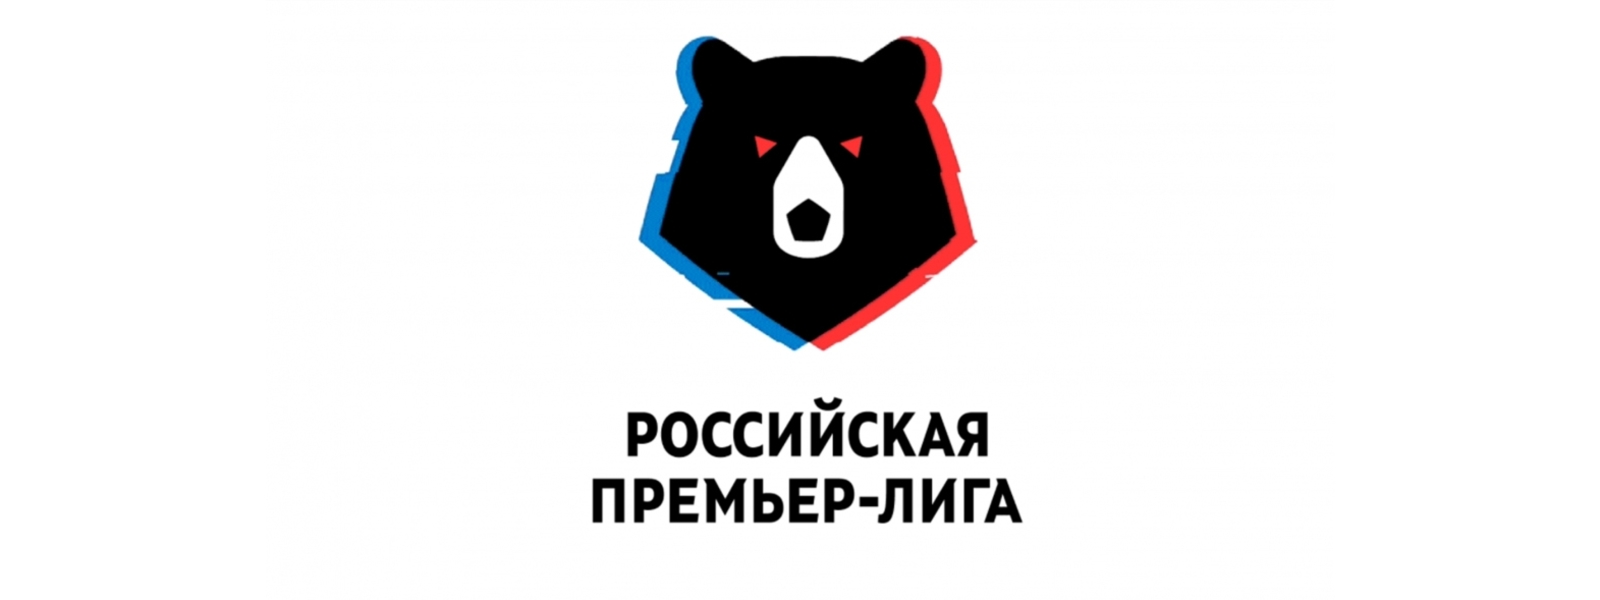 Календарь игр ПФК ЦСКА в первых восьми турах | RBWorld.org